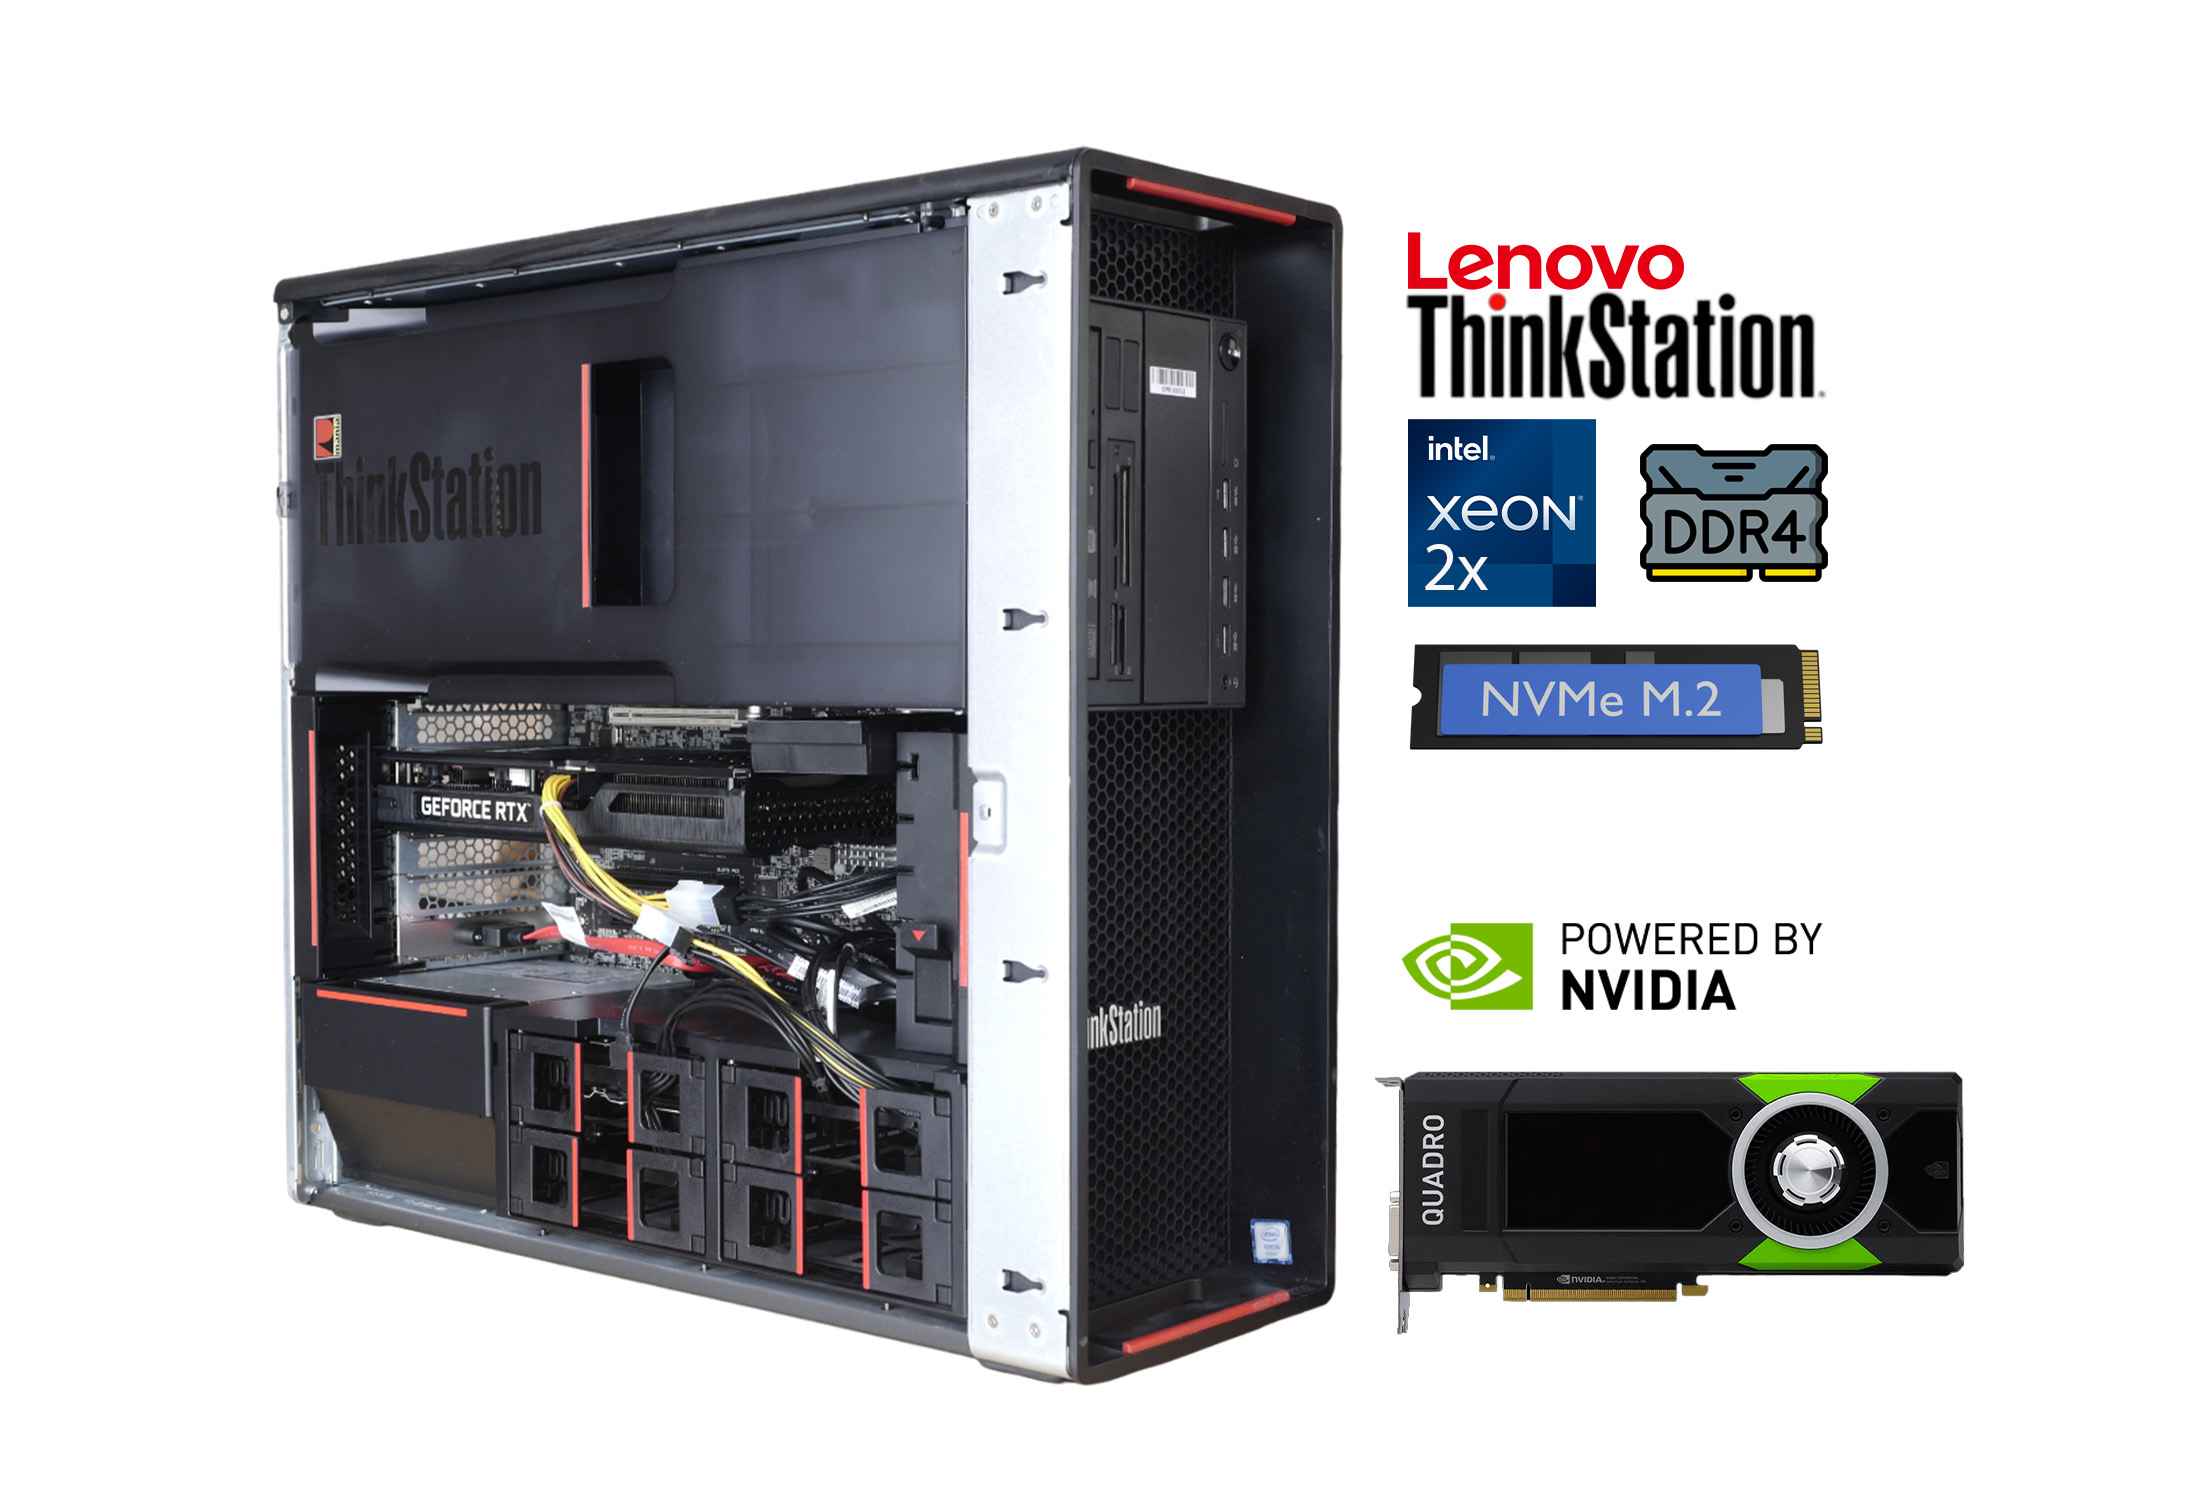 Lenovo Thinkstation P700 2x Xeon E5-2690v3 DDR4 NVMe Quadro M4000